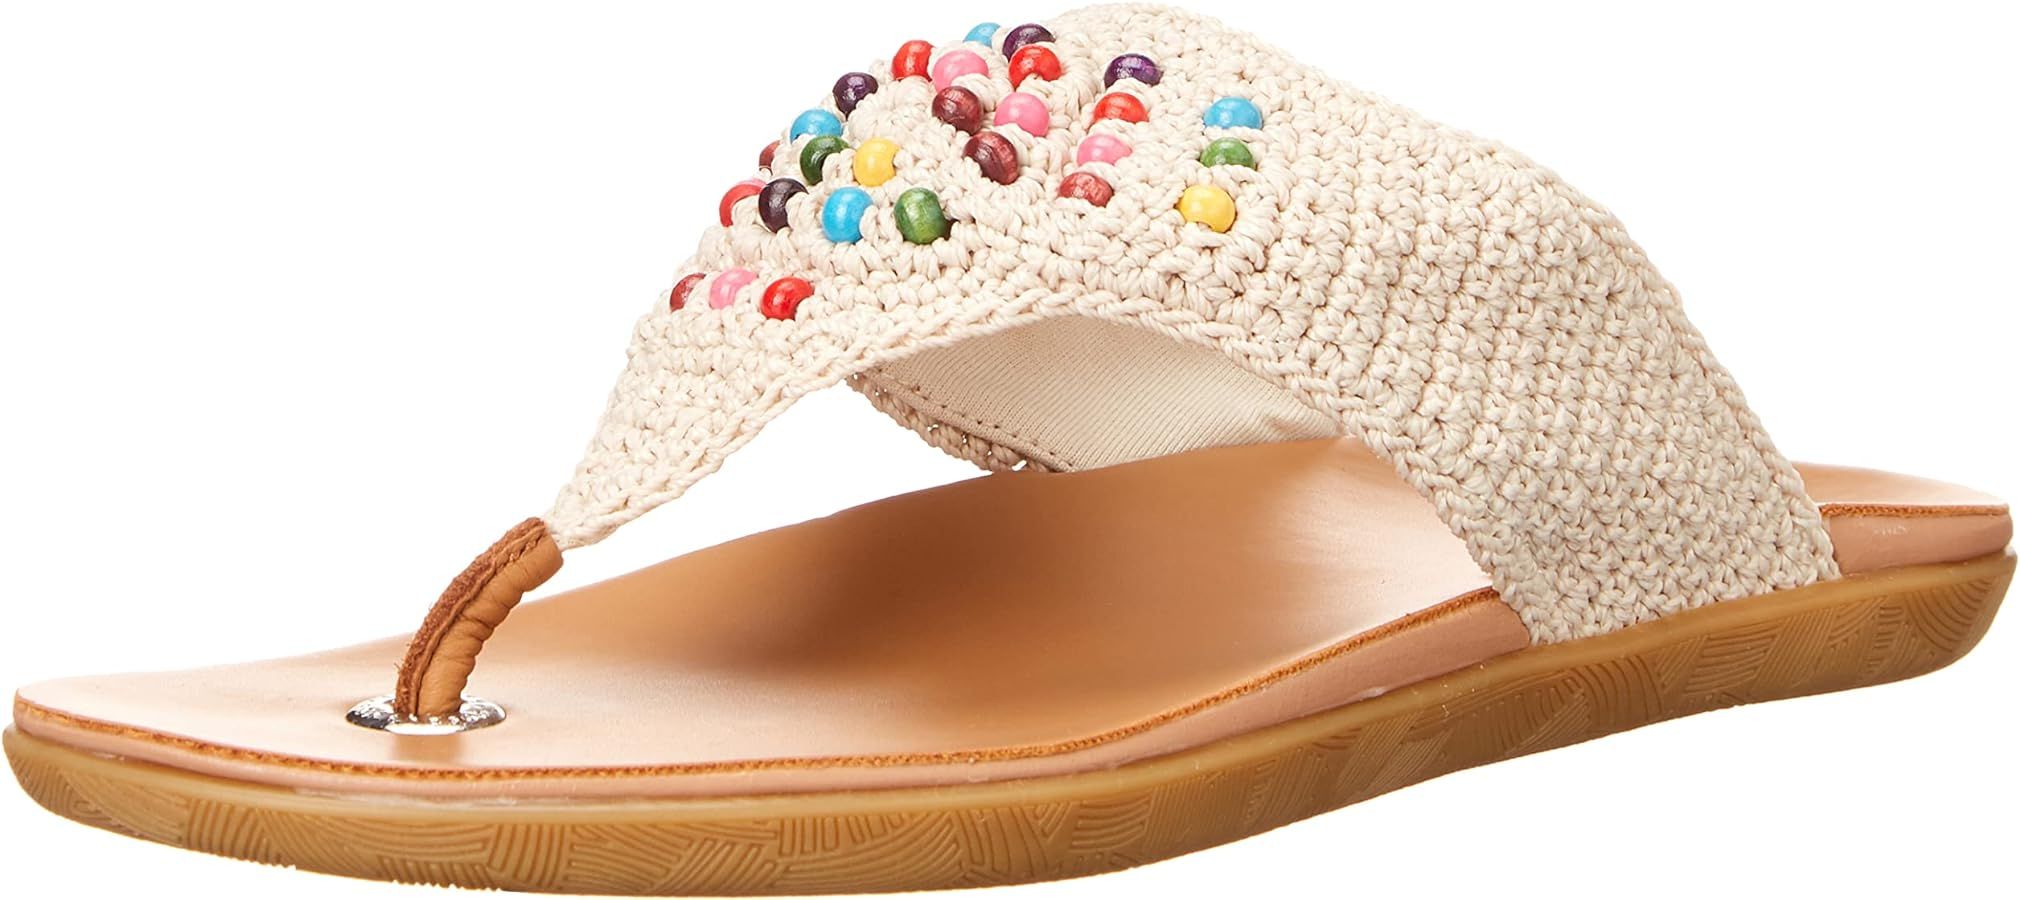 The Sak Shana Thong Sandal in Crochet, Slip On Entry | Amazon (US)